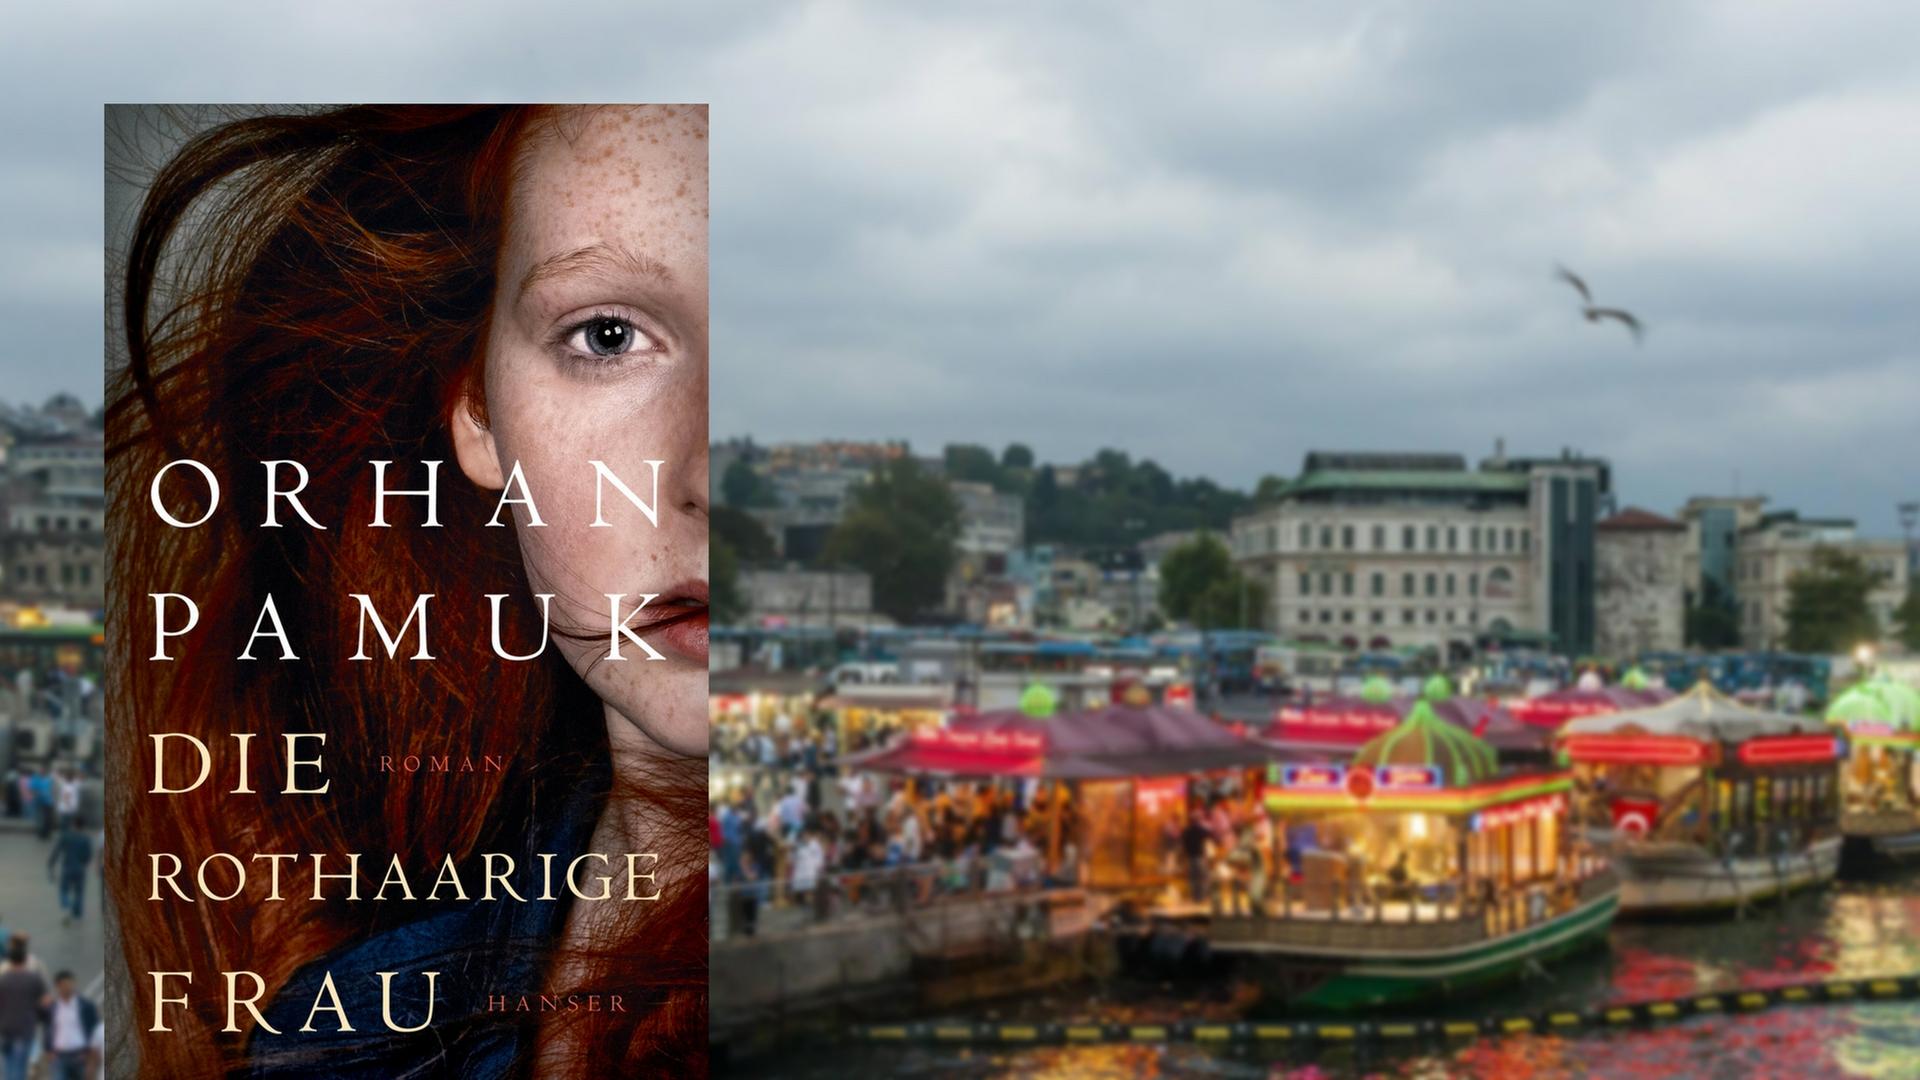 Cover des Buches Orhan Pamuk: "Die rothaarige Frau"